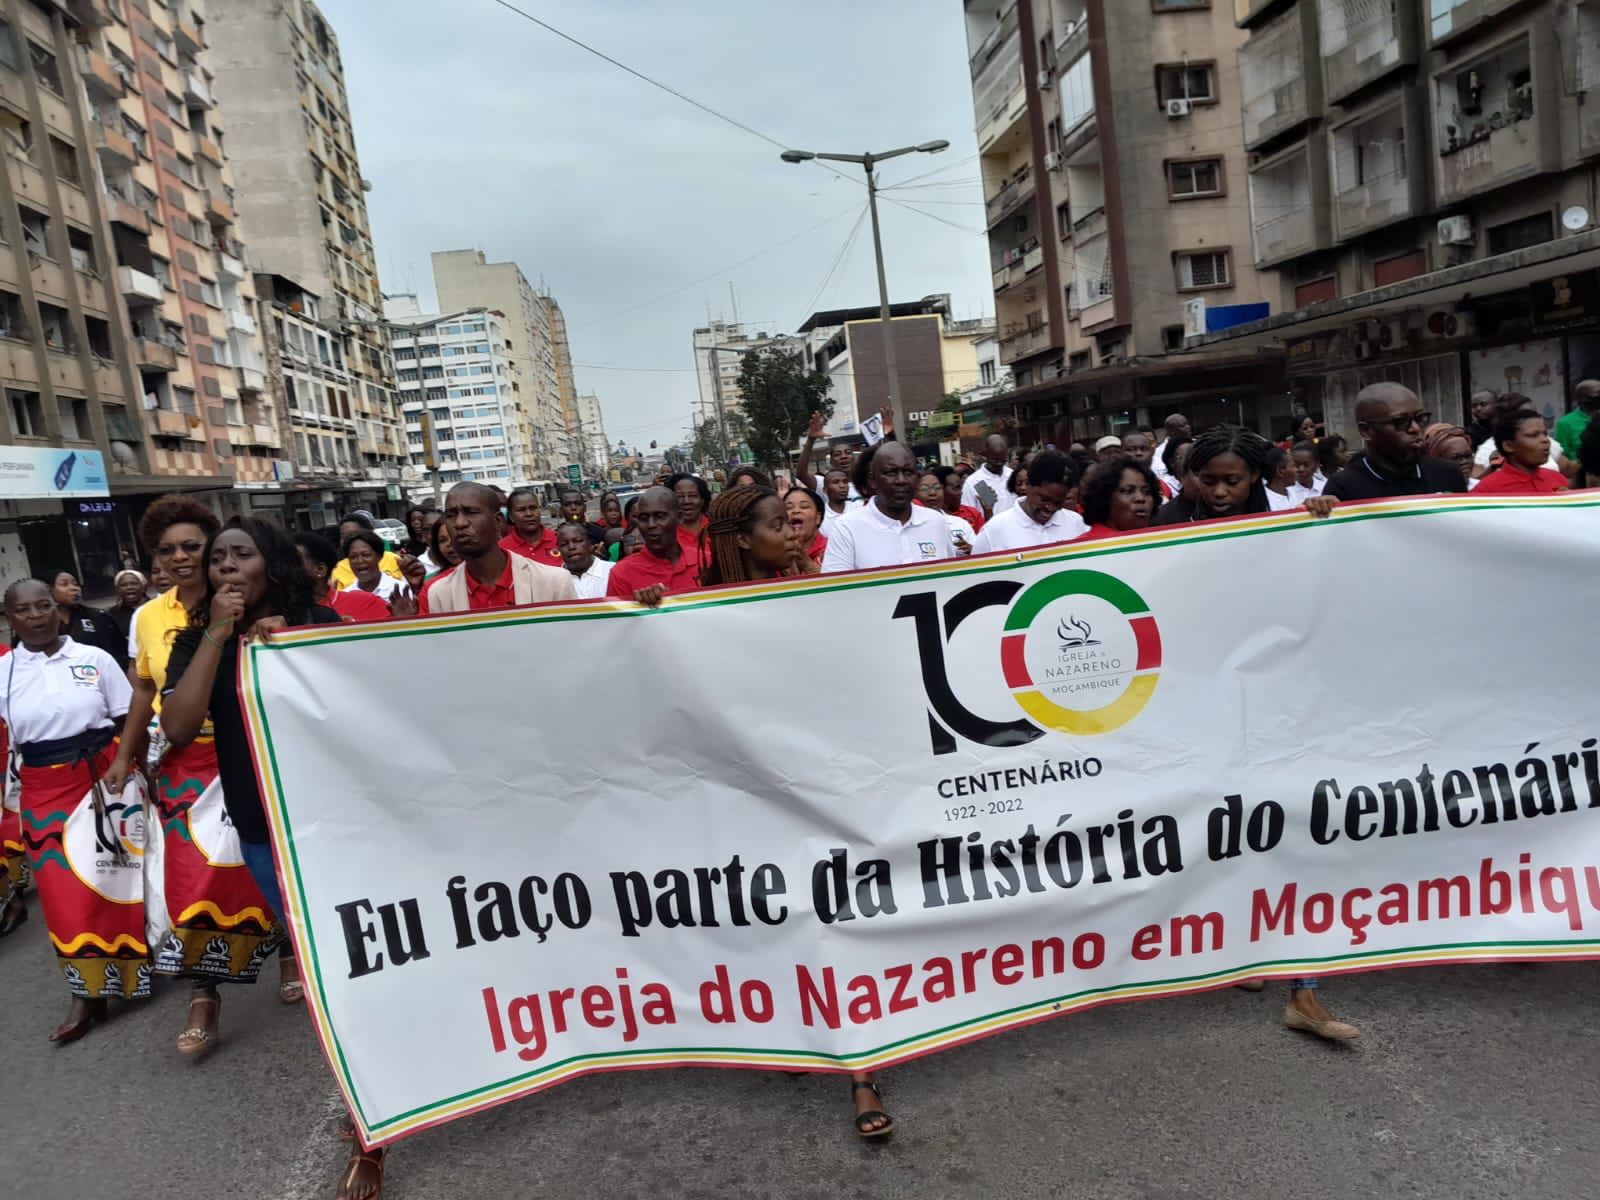 Início das Celebrações do Centenário de Moçambique